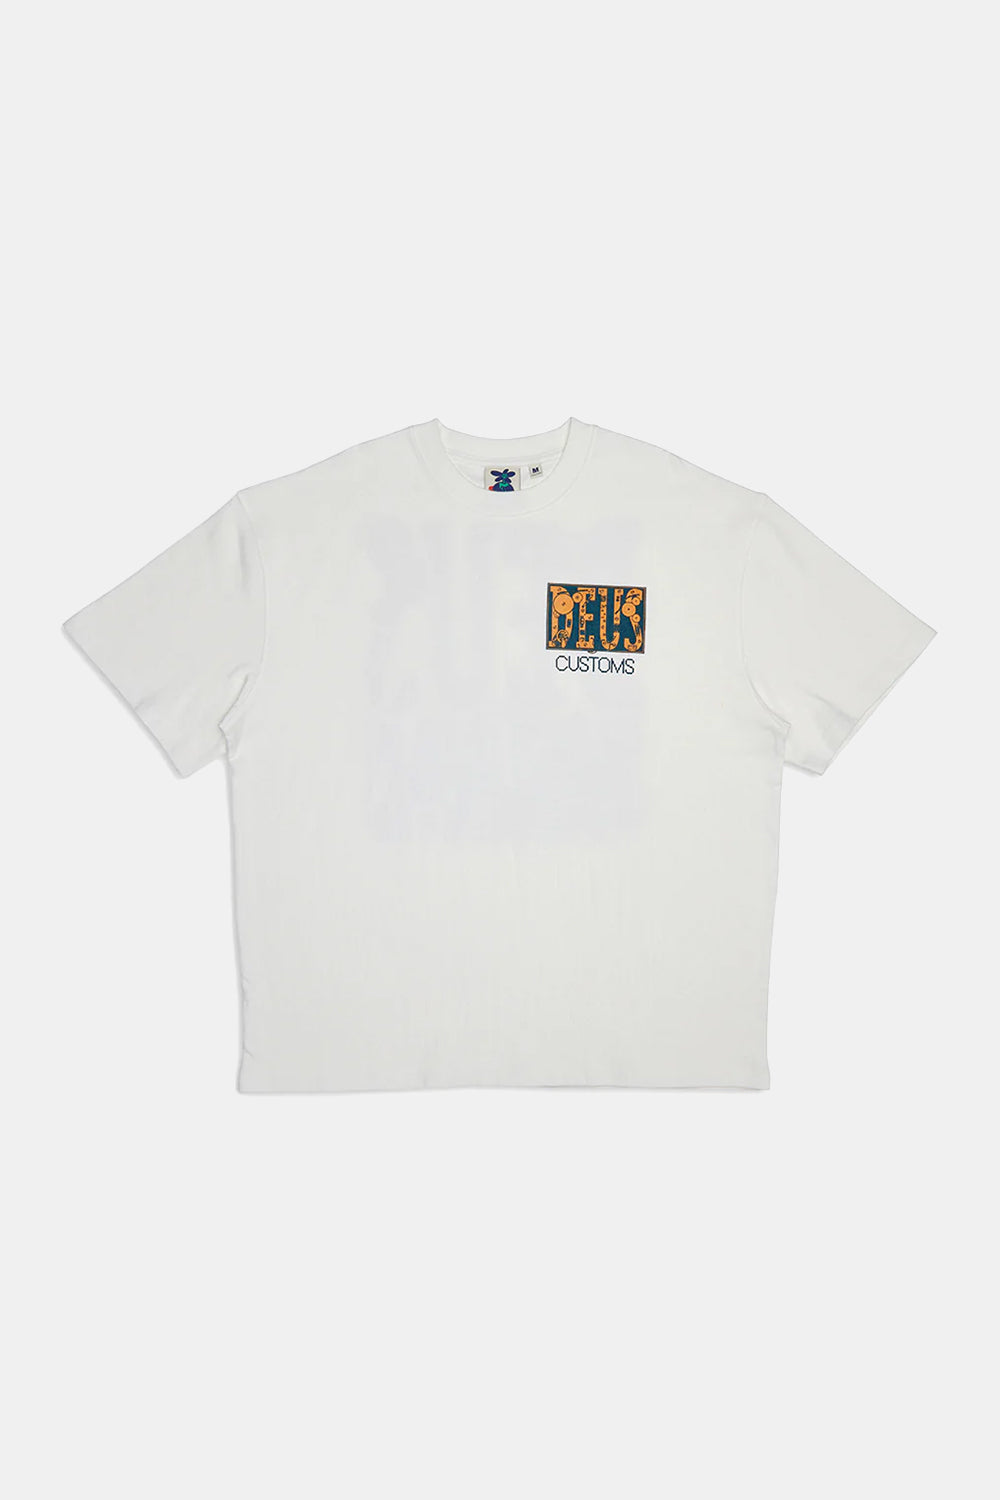 Deus Full Circuit T-shirt (Vintage White)
